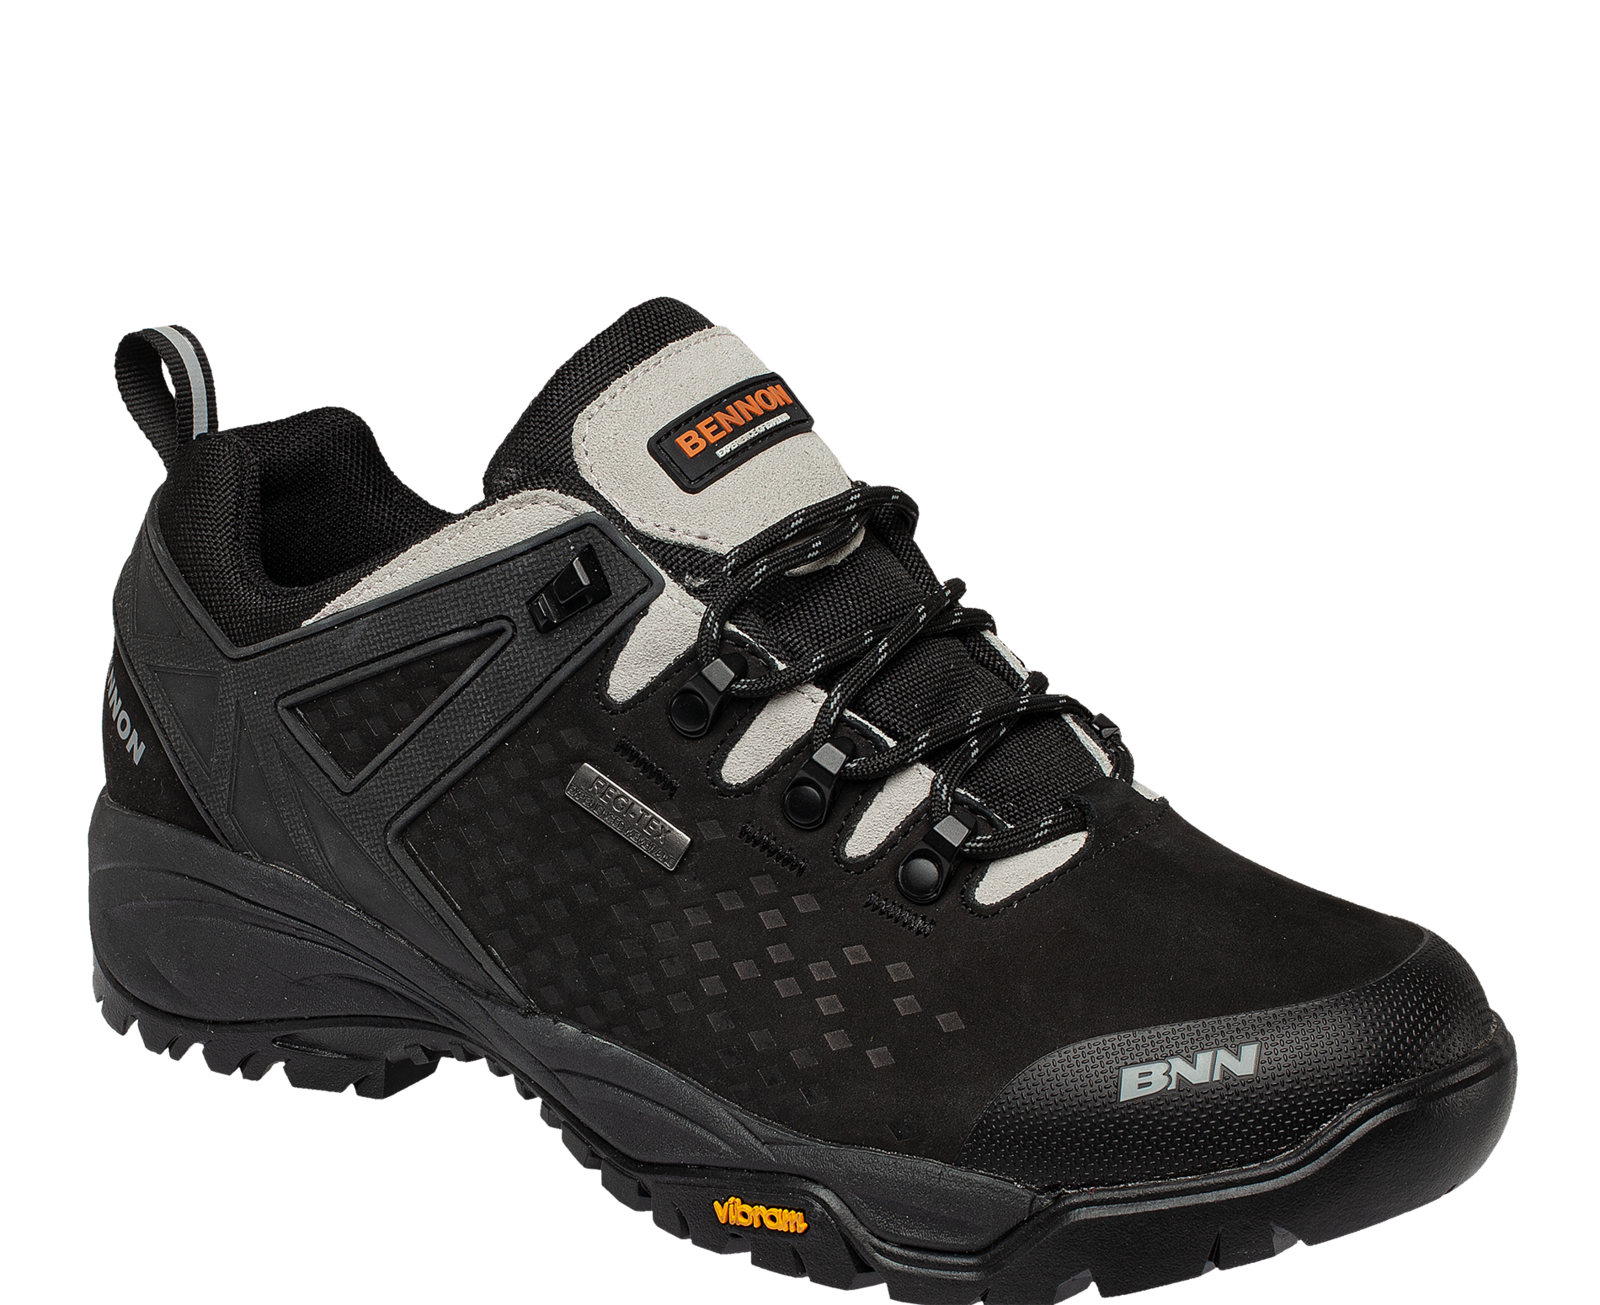 Outdoorová obuv Bennon Recado XTR O2 s membránou - veľkosť: 38, farba: čierna